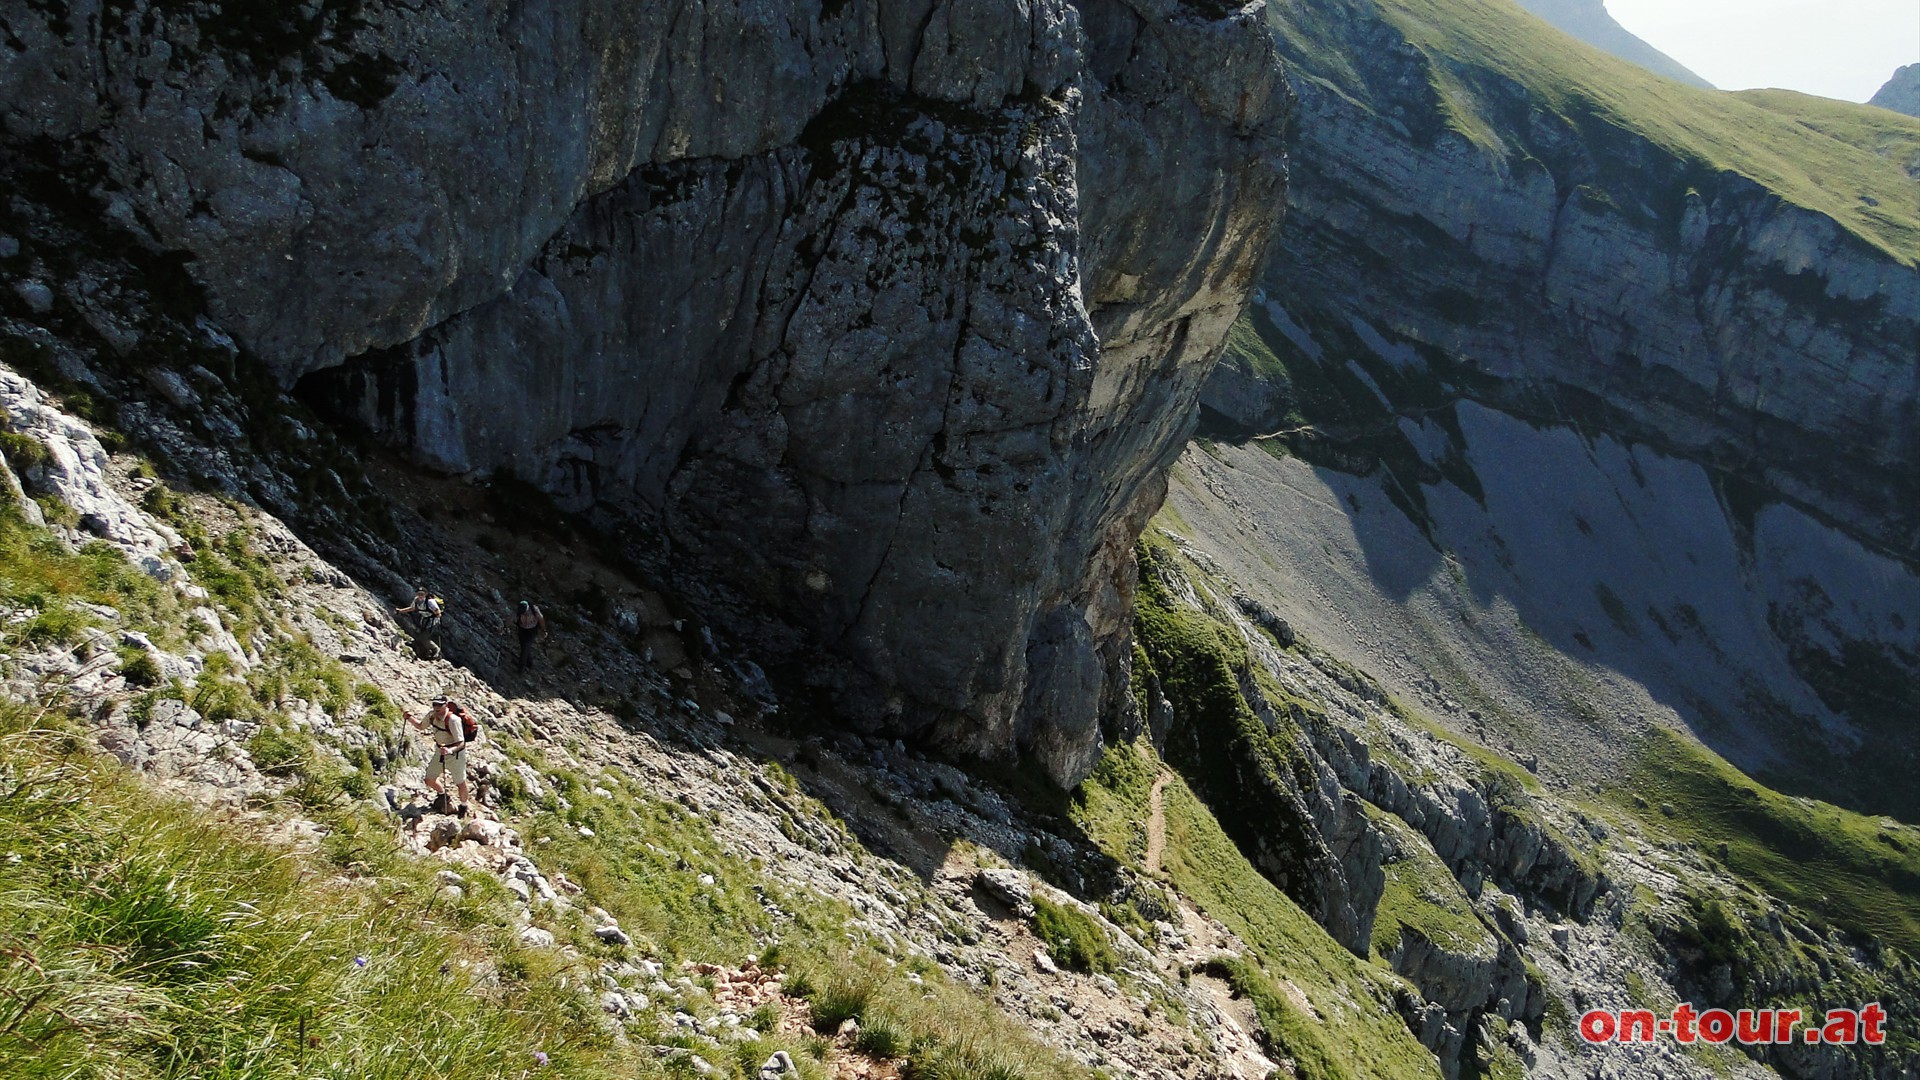 ber eine steinige Steilstufe, am westlichen Gipfelaufbau entlang, geht es weiter nach oben. Die letzten Hhenmeter dann noch am flacheren, grasigen Westhang entlang.